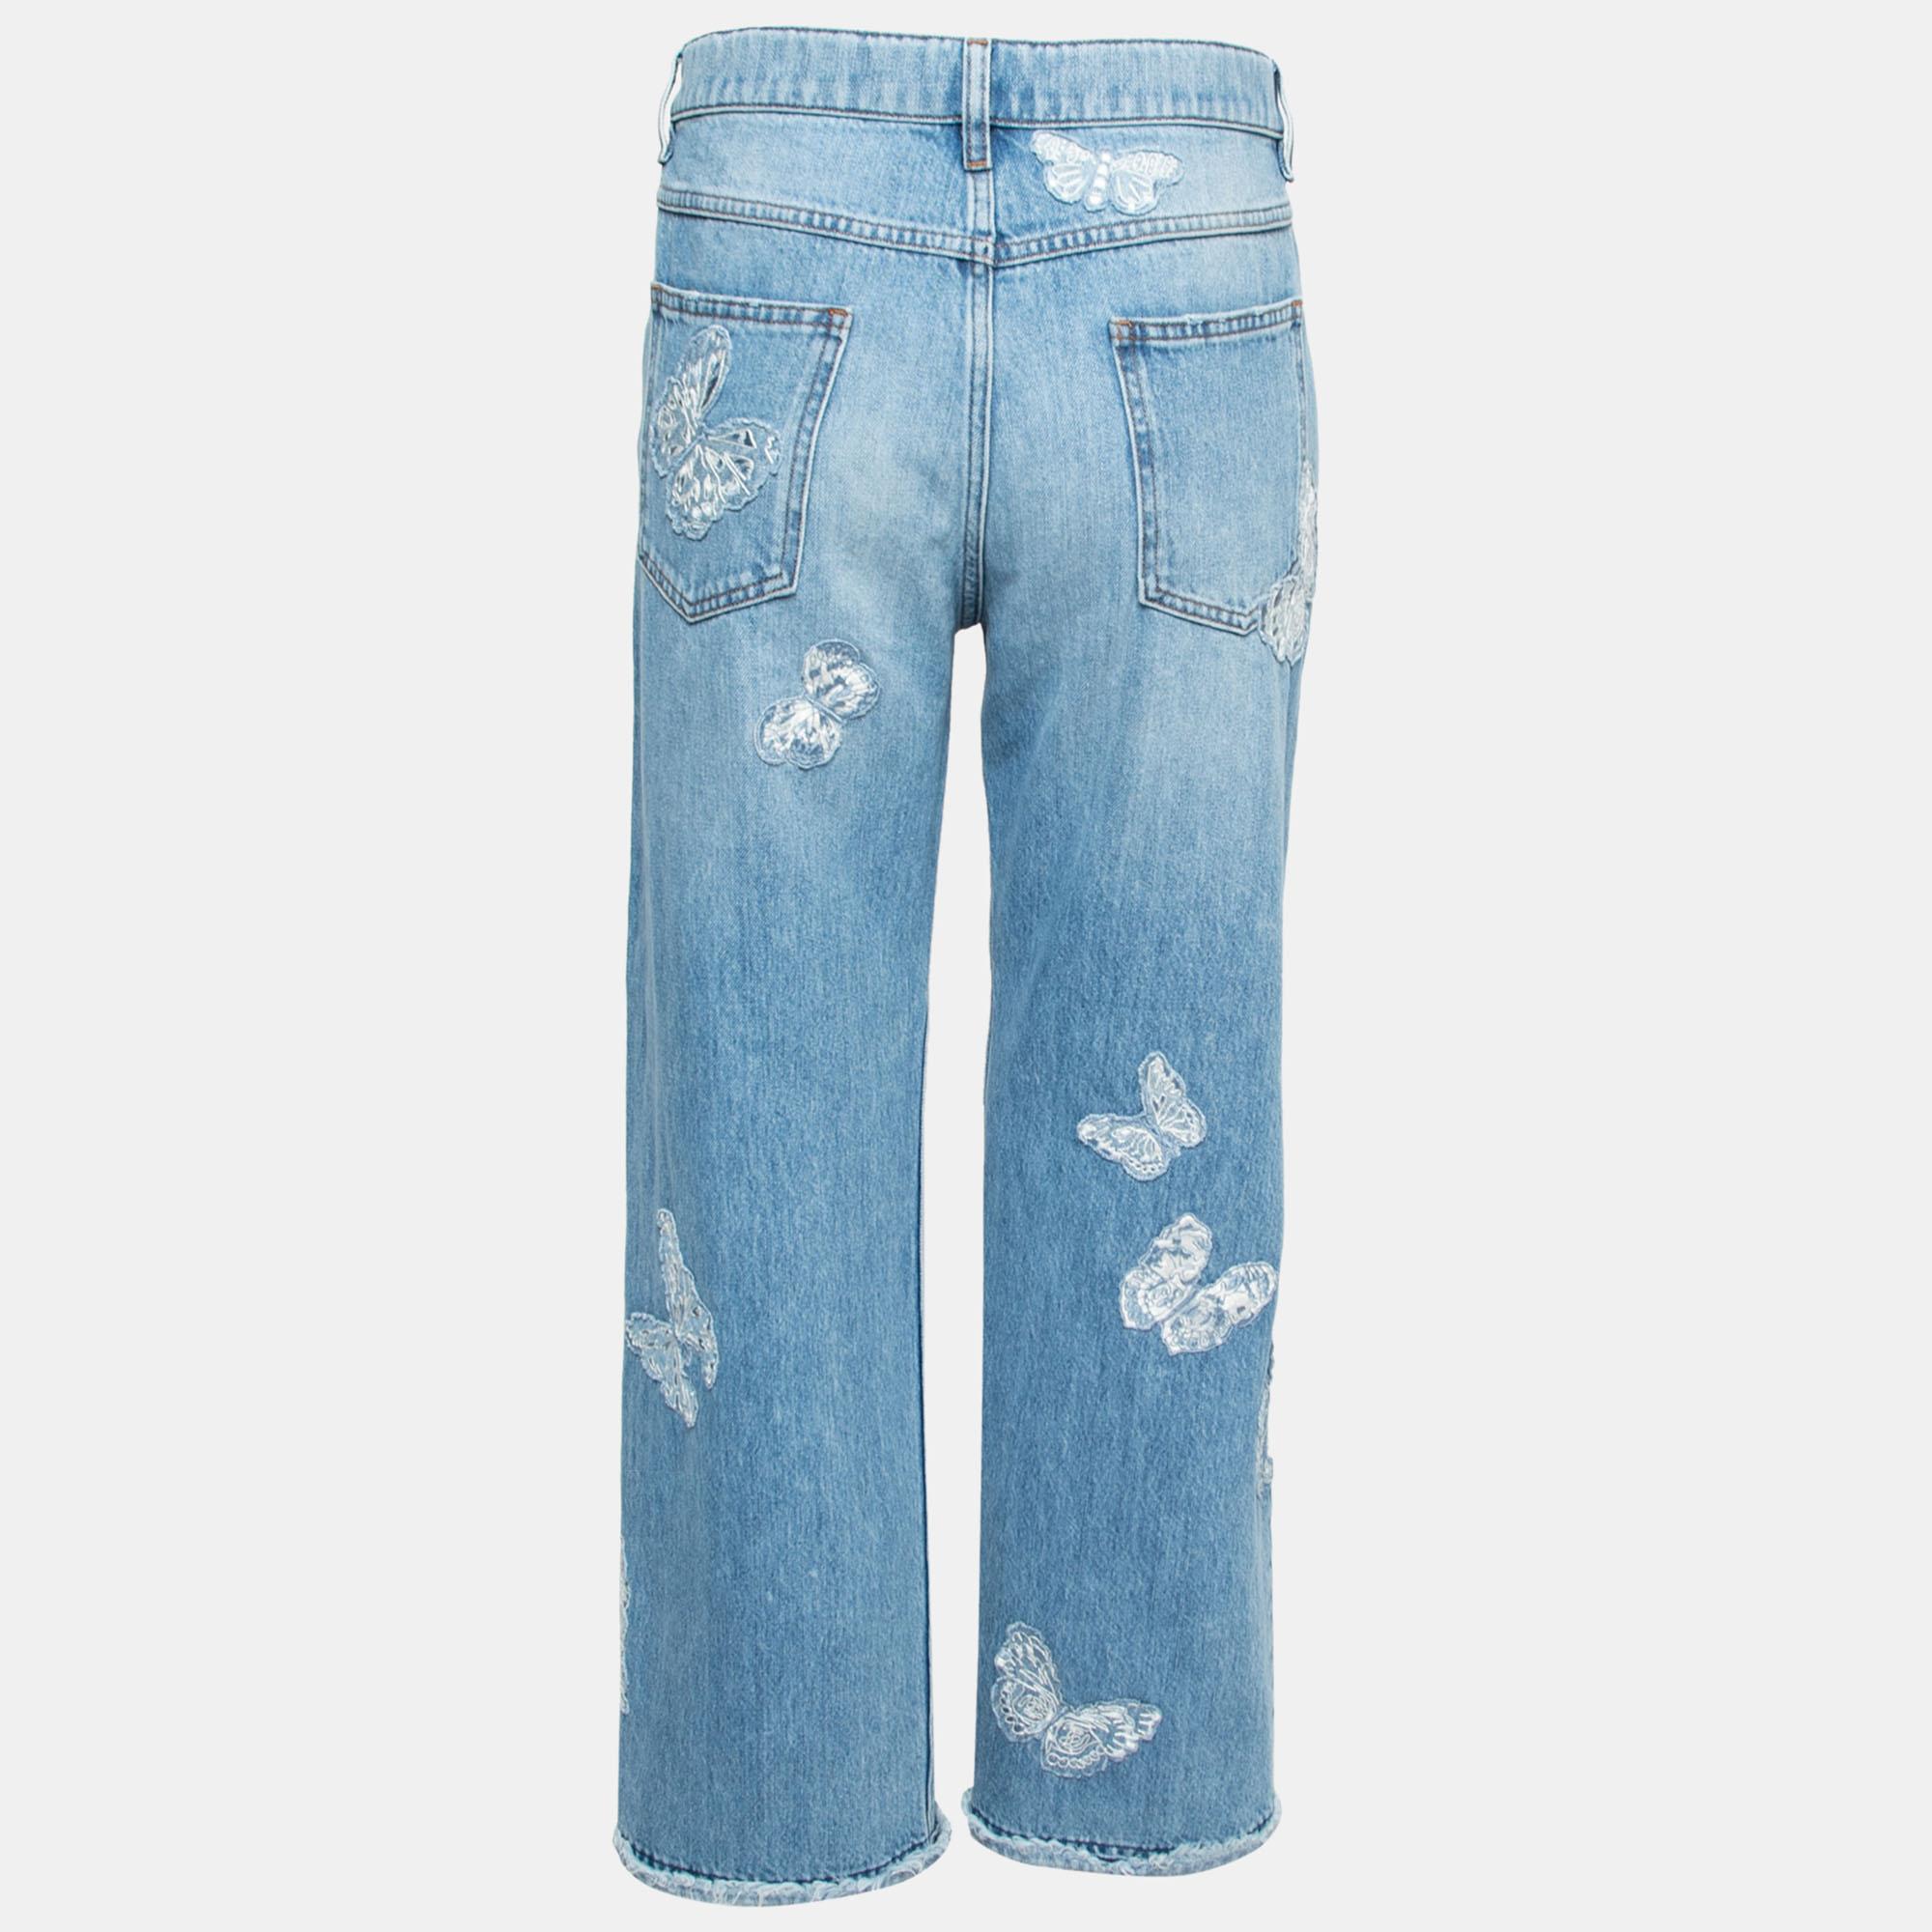 Eine gut sitzende Jeans ist ein Muss für jeden Kleiderschrank, daher präsentieren wir Ihnen diese Kreation von Valentino. Es wurde aus einer Mischung hochwertiger Materialien geschneidert und zeigt sich in einem blauen Farbton mit charakteristischen